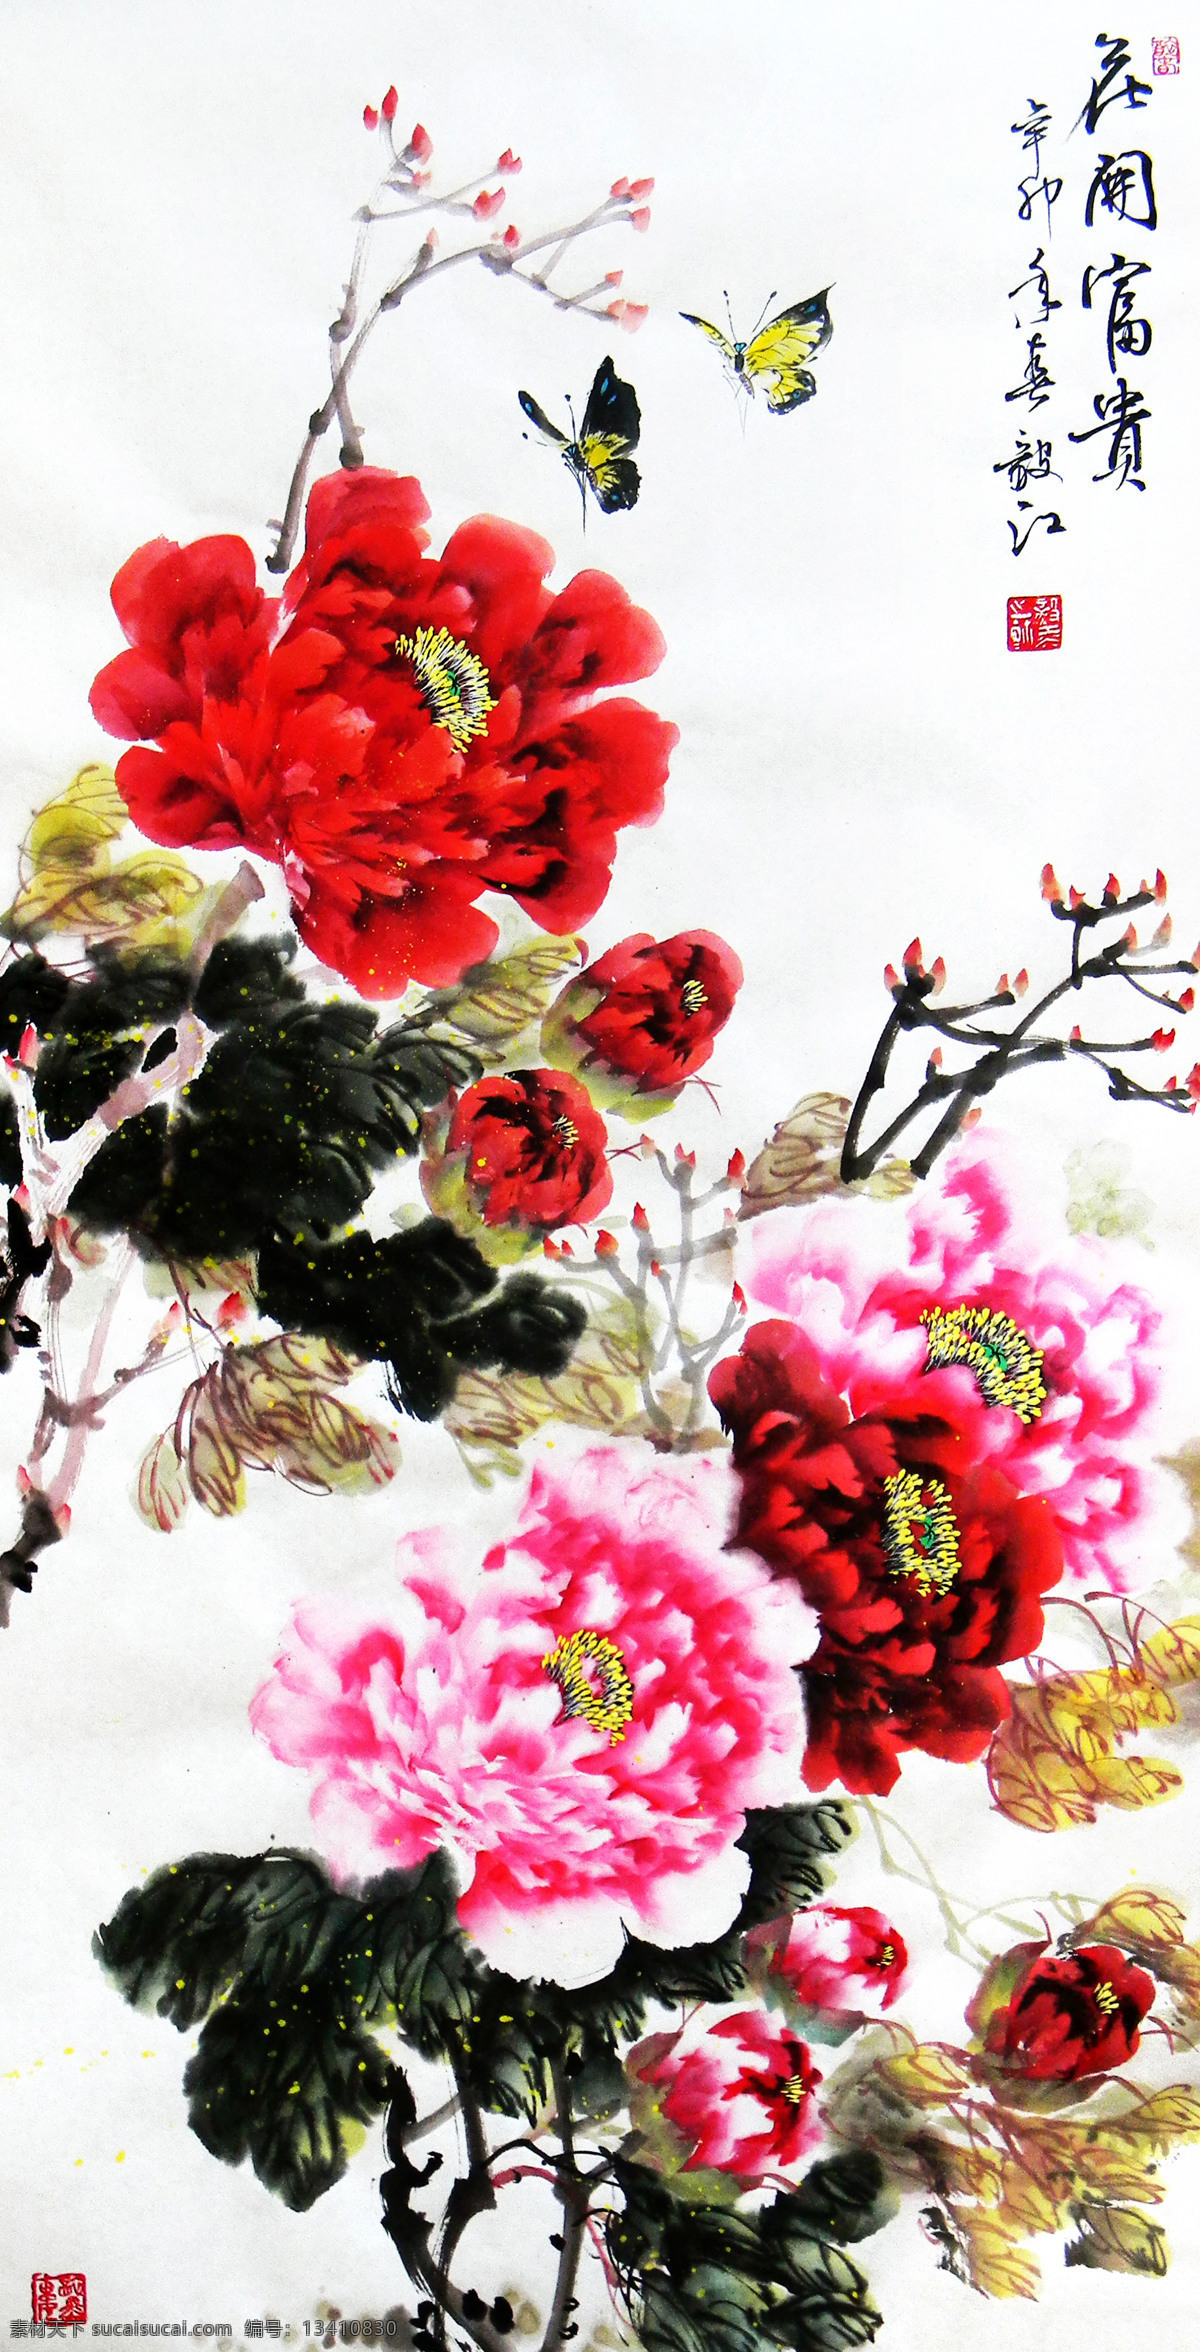 花开富贵 美术 中国画 花卉画 牡丹画 牡丹花 蝴蝶 国画艺术 国画集79 绘画书法 文化艺术